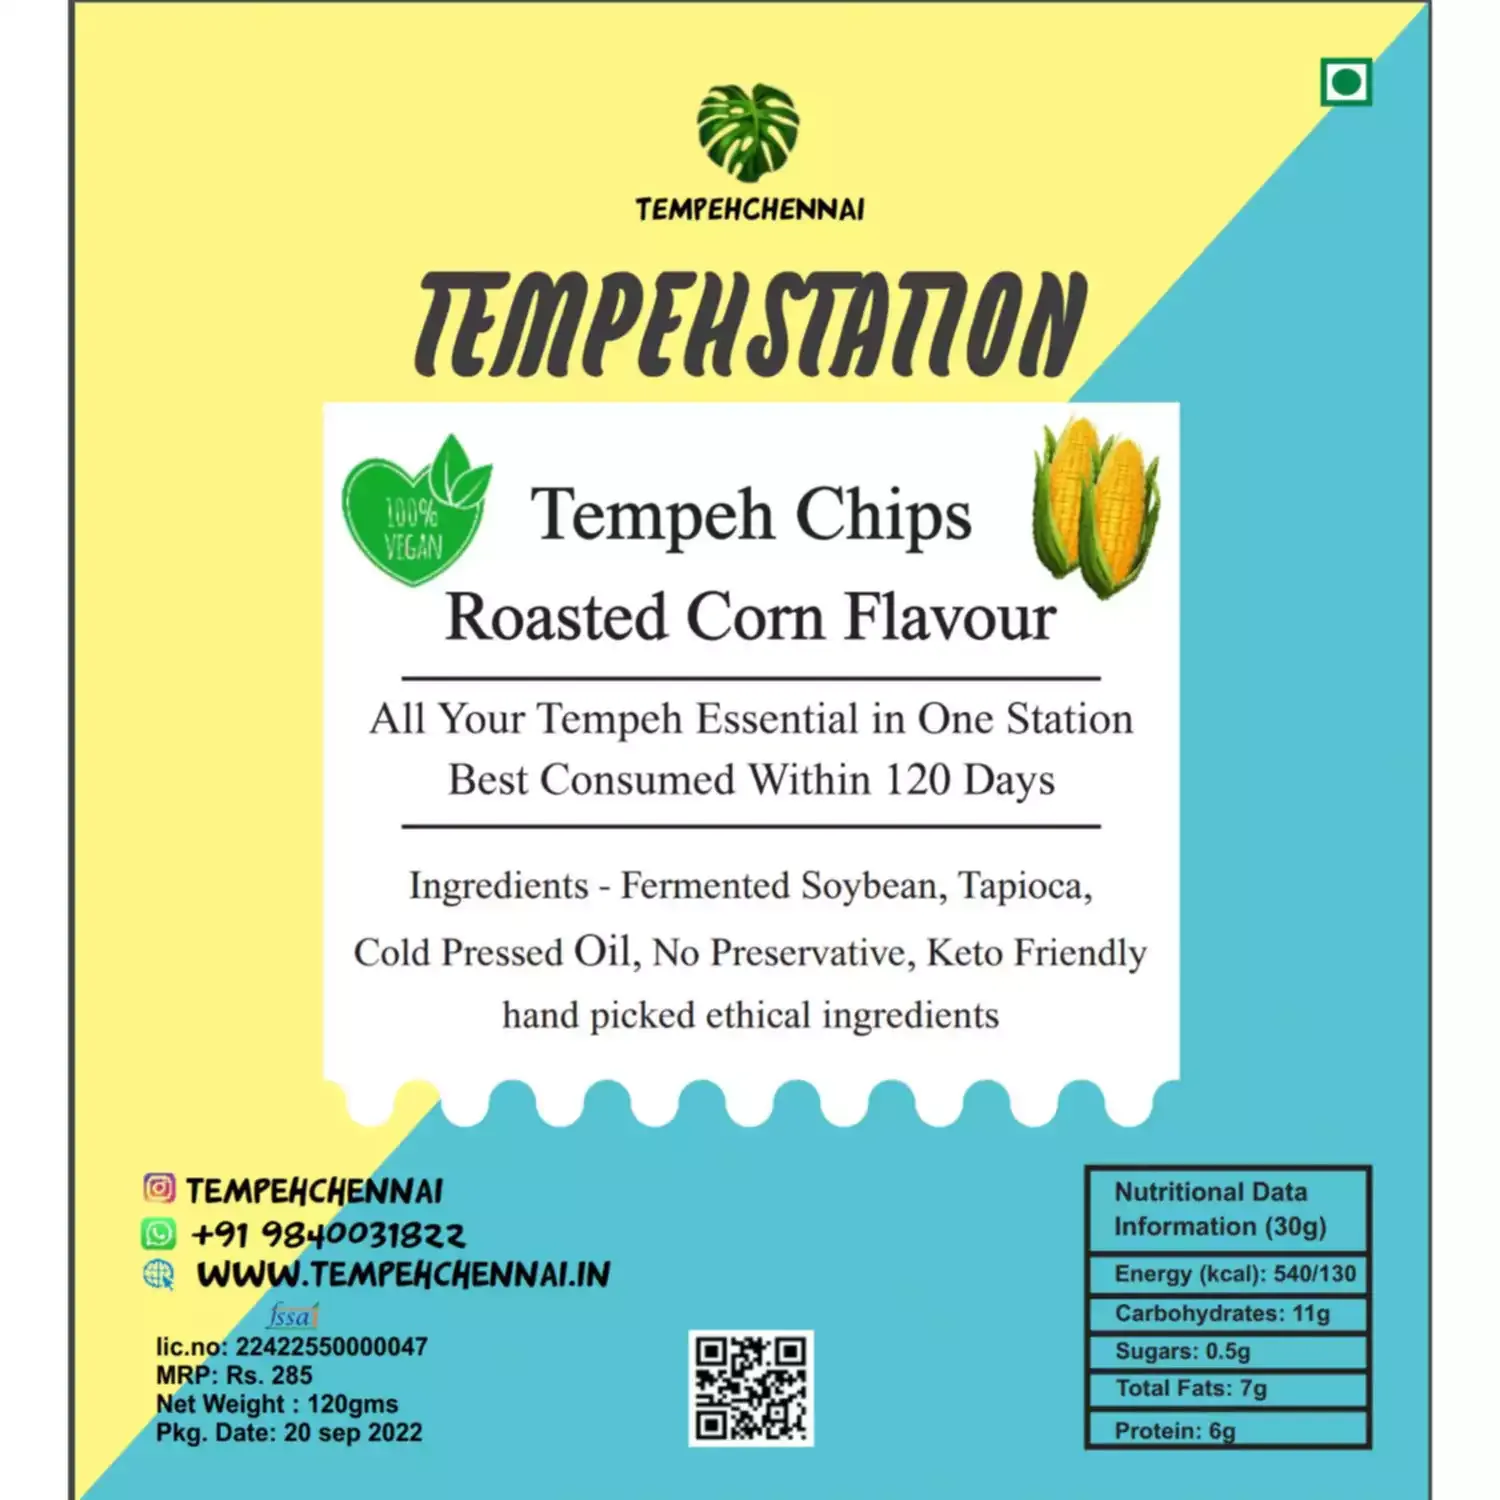 Tempeh Chennai Tempeh Chips Roasted Corn Flavour 120g